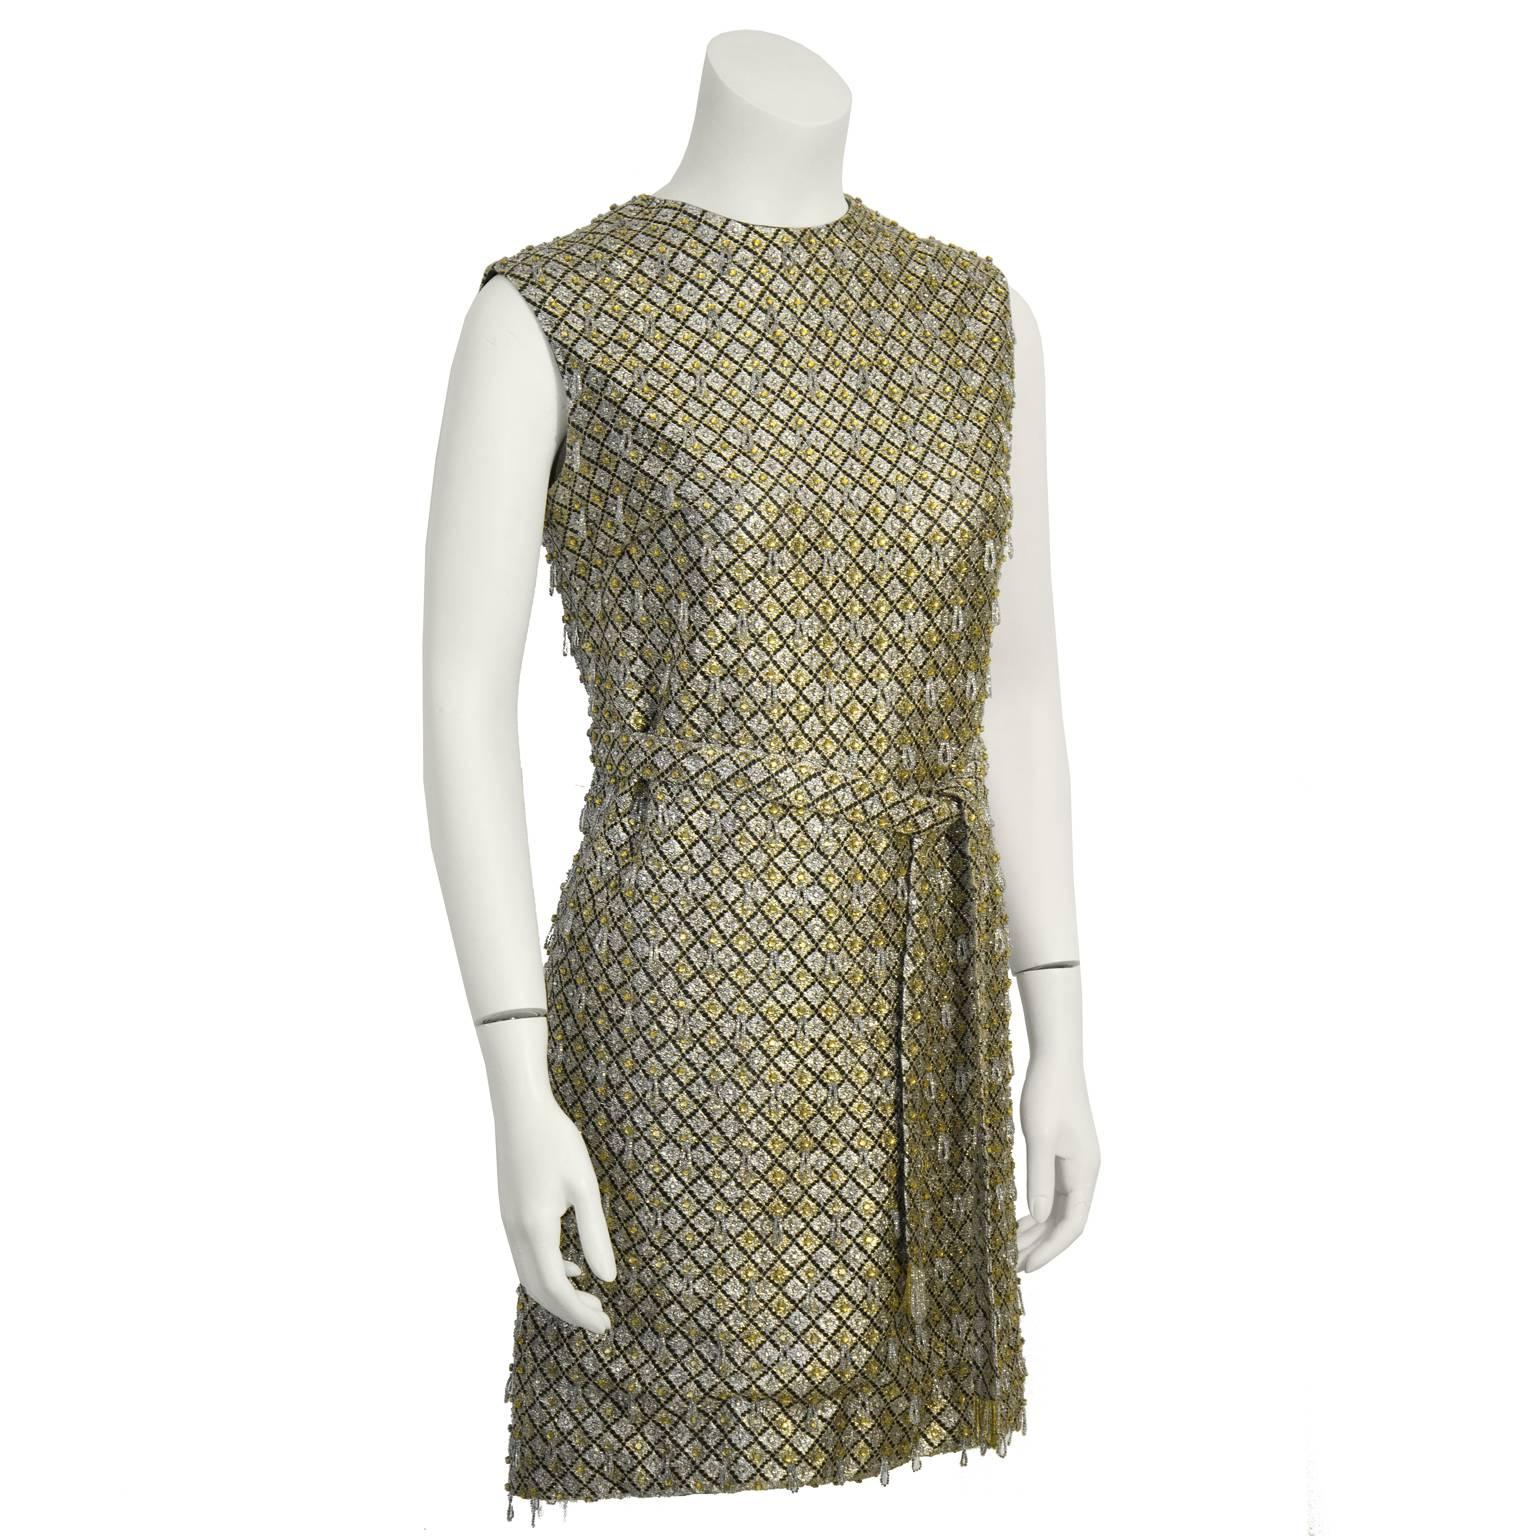 Fabuleuse mini robe anonyme à paillettes et perles dorées et argentées datant des années 1960. Coupe A-line avec un col haut et une ceinture optionnelle de la même matière. Fermeture à glissière dans le dos. Excellent état vintage. S'adapte comme un